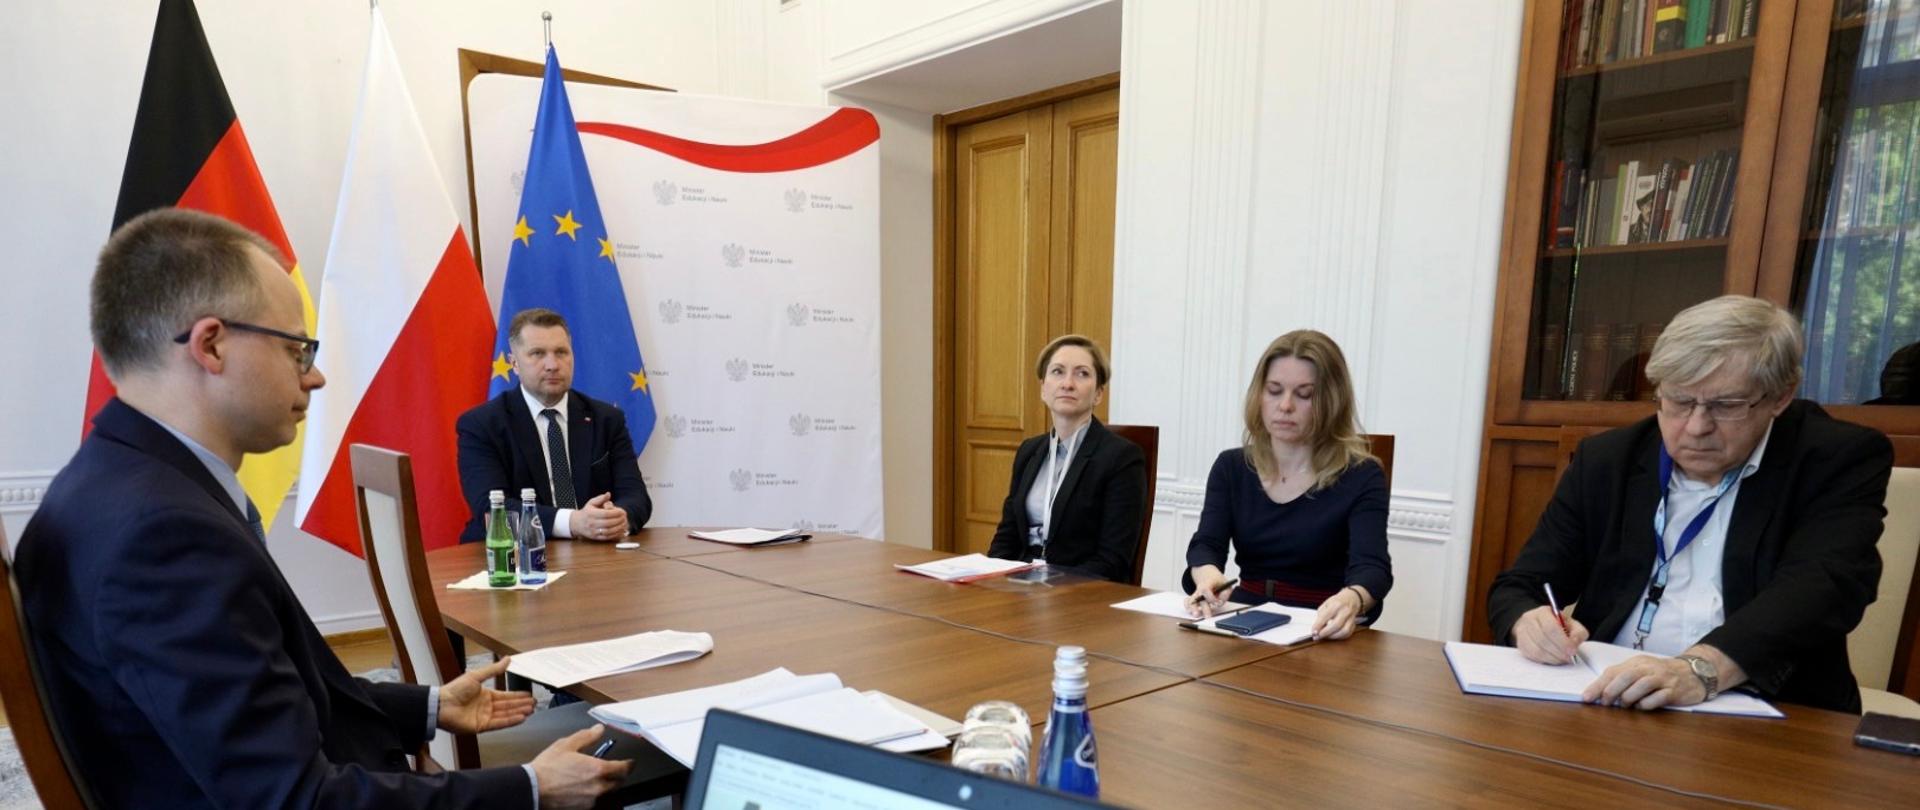 spotkanie przeprowadzane w formie online, minister Czarnek siedzi przy stole i rozmawia przez kamerkę